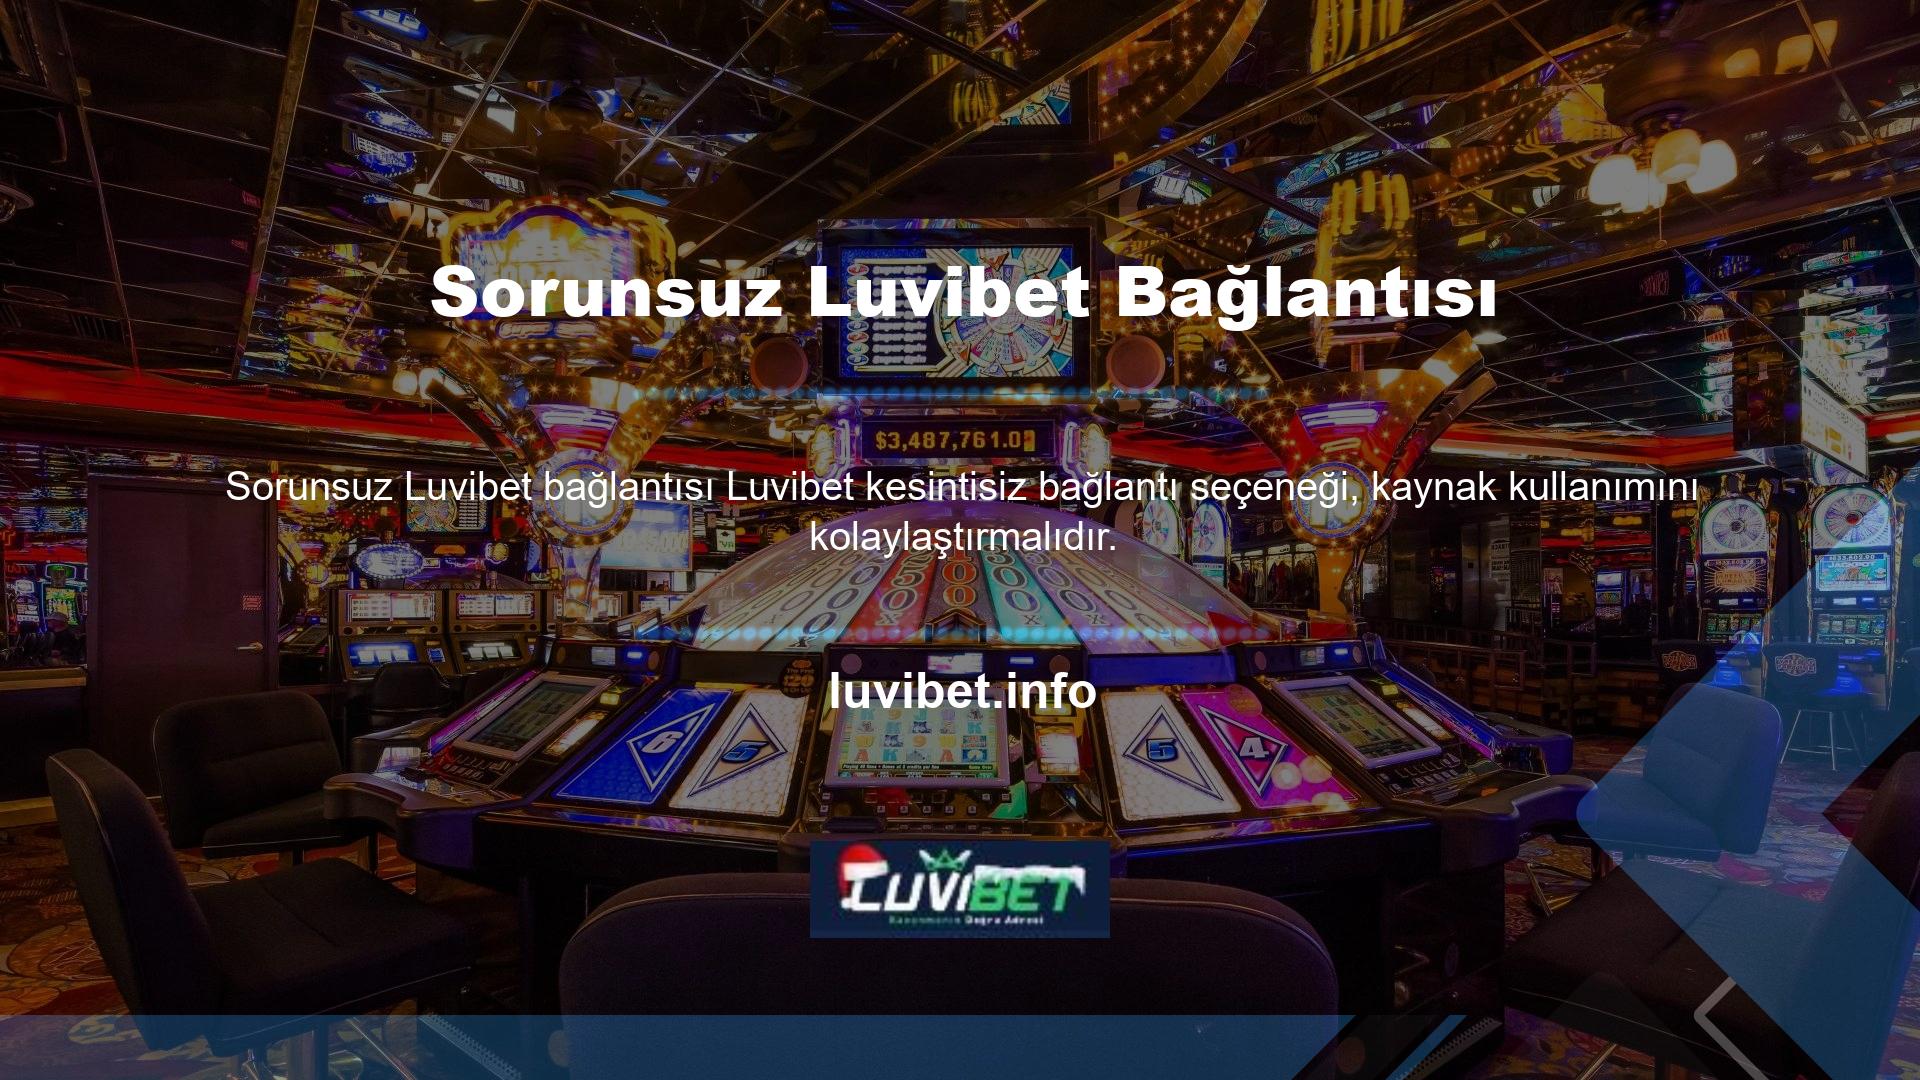 Casino siteleri her zaman bilgi vermeye hazırdır ve hizmetlerini resmi kanalları aracılığıyla sunmaya devam etmektedir